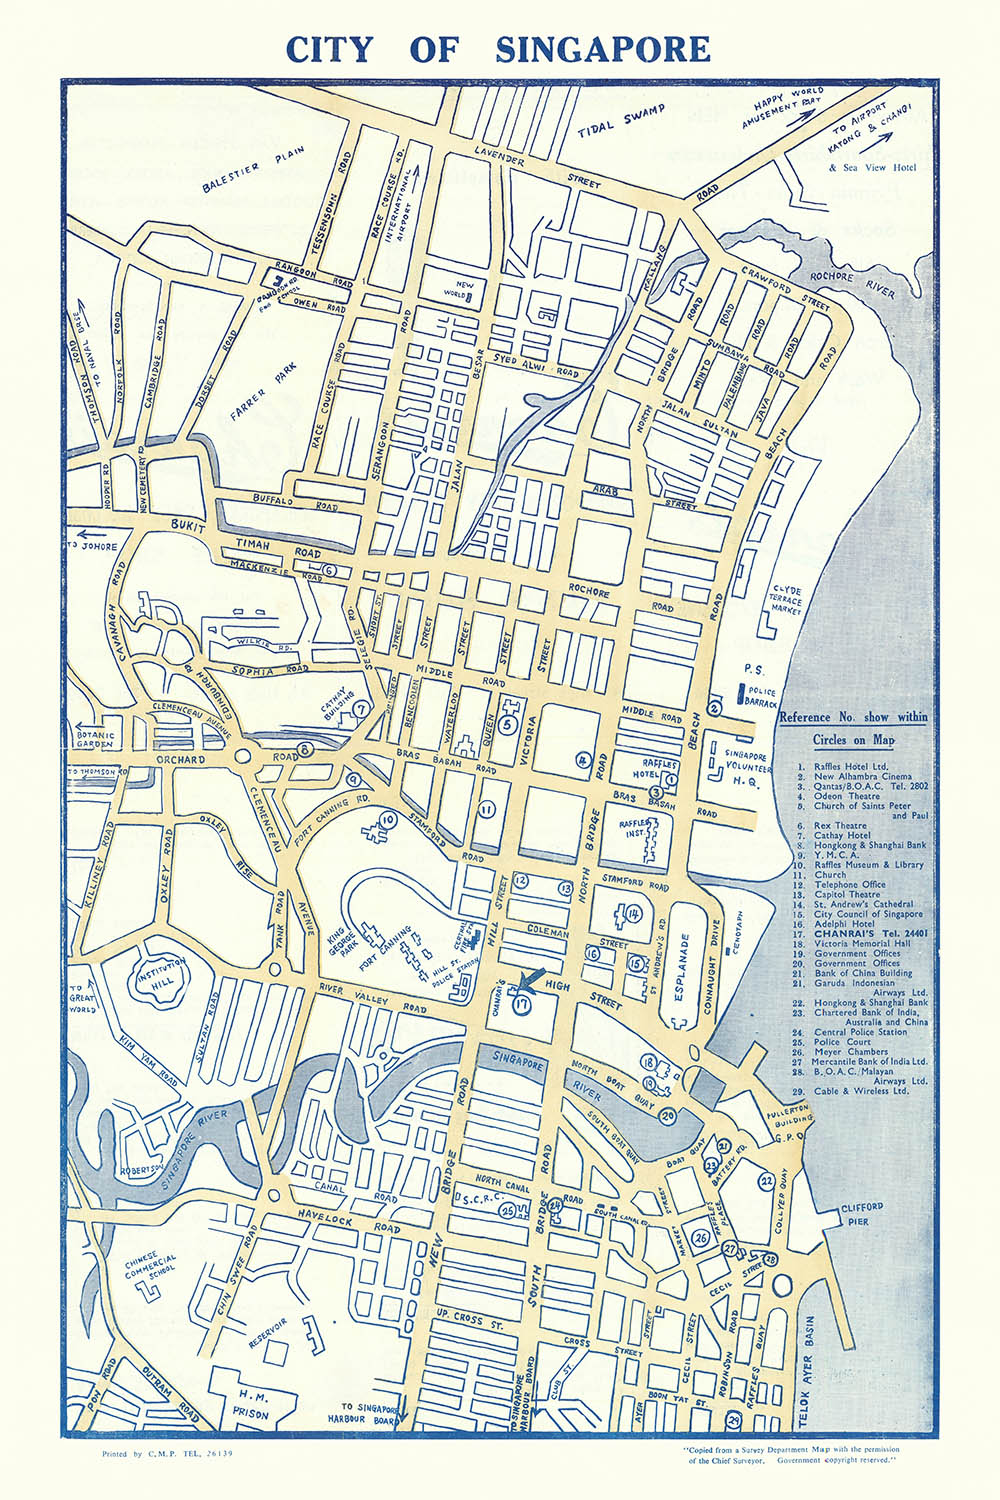 Ancienne carte de la ville de Singapour, 1950 : centre-ville, quartier du patrimoine malais de Kampong Glam, Cross Street, Lavender Street, parc d'attractions Happy World